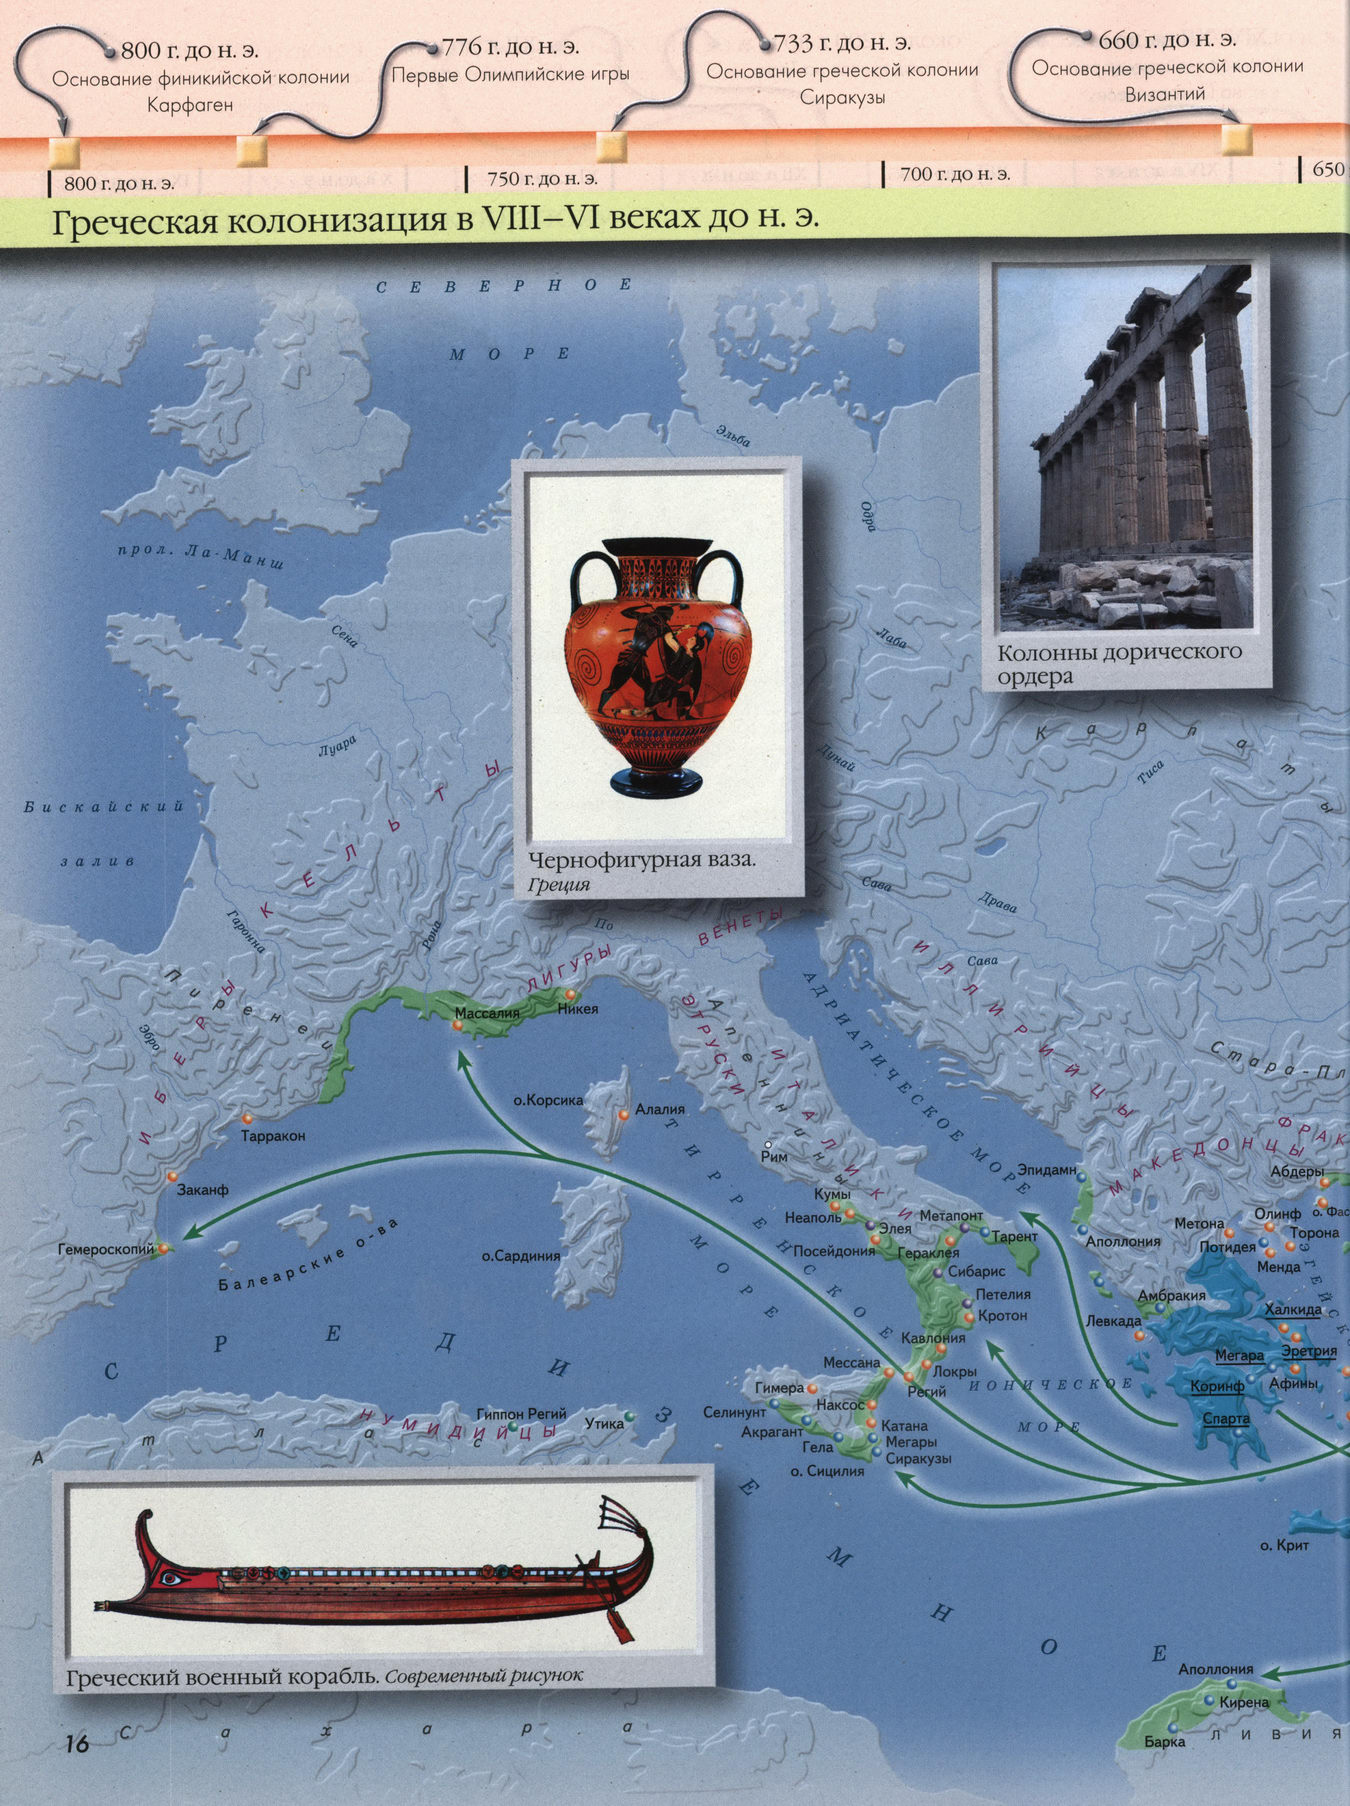 Греческая колонизация - карта